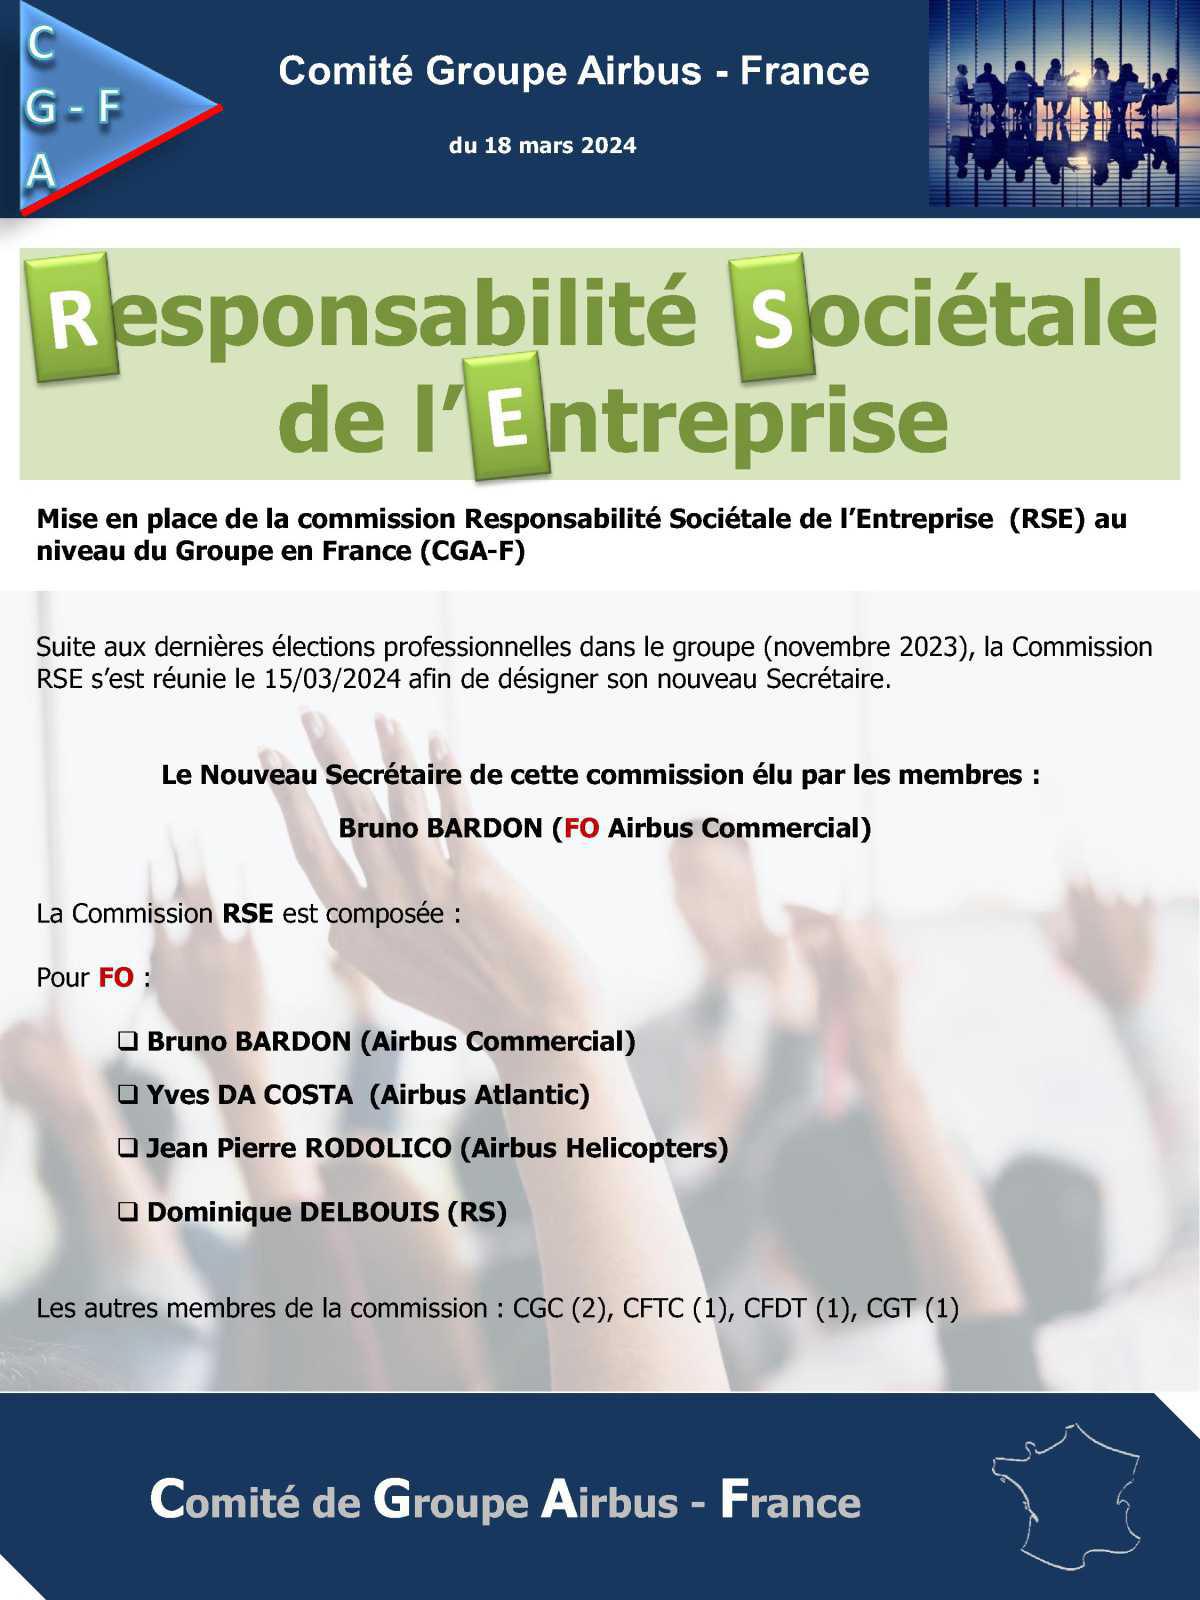 CGAF: Mise en place de la commission Responsabilité Sociétale de l’Entreprise (RSE) au niveau du Groupe en France